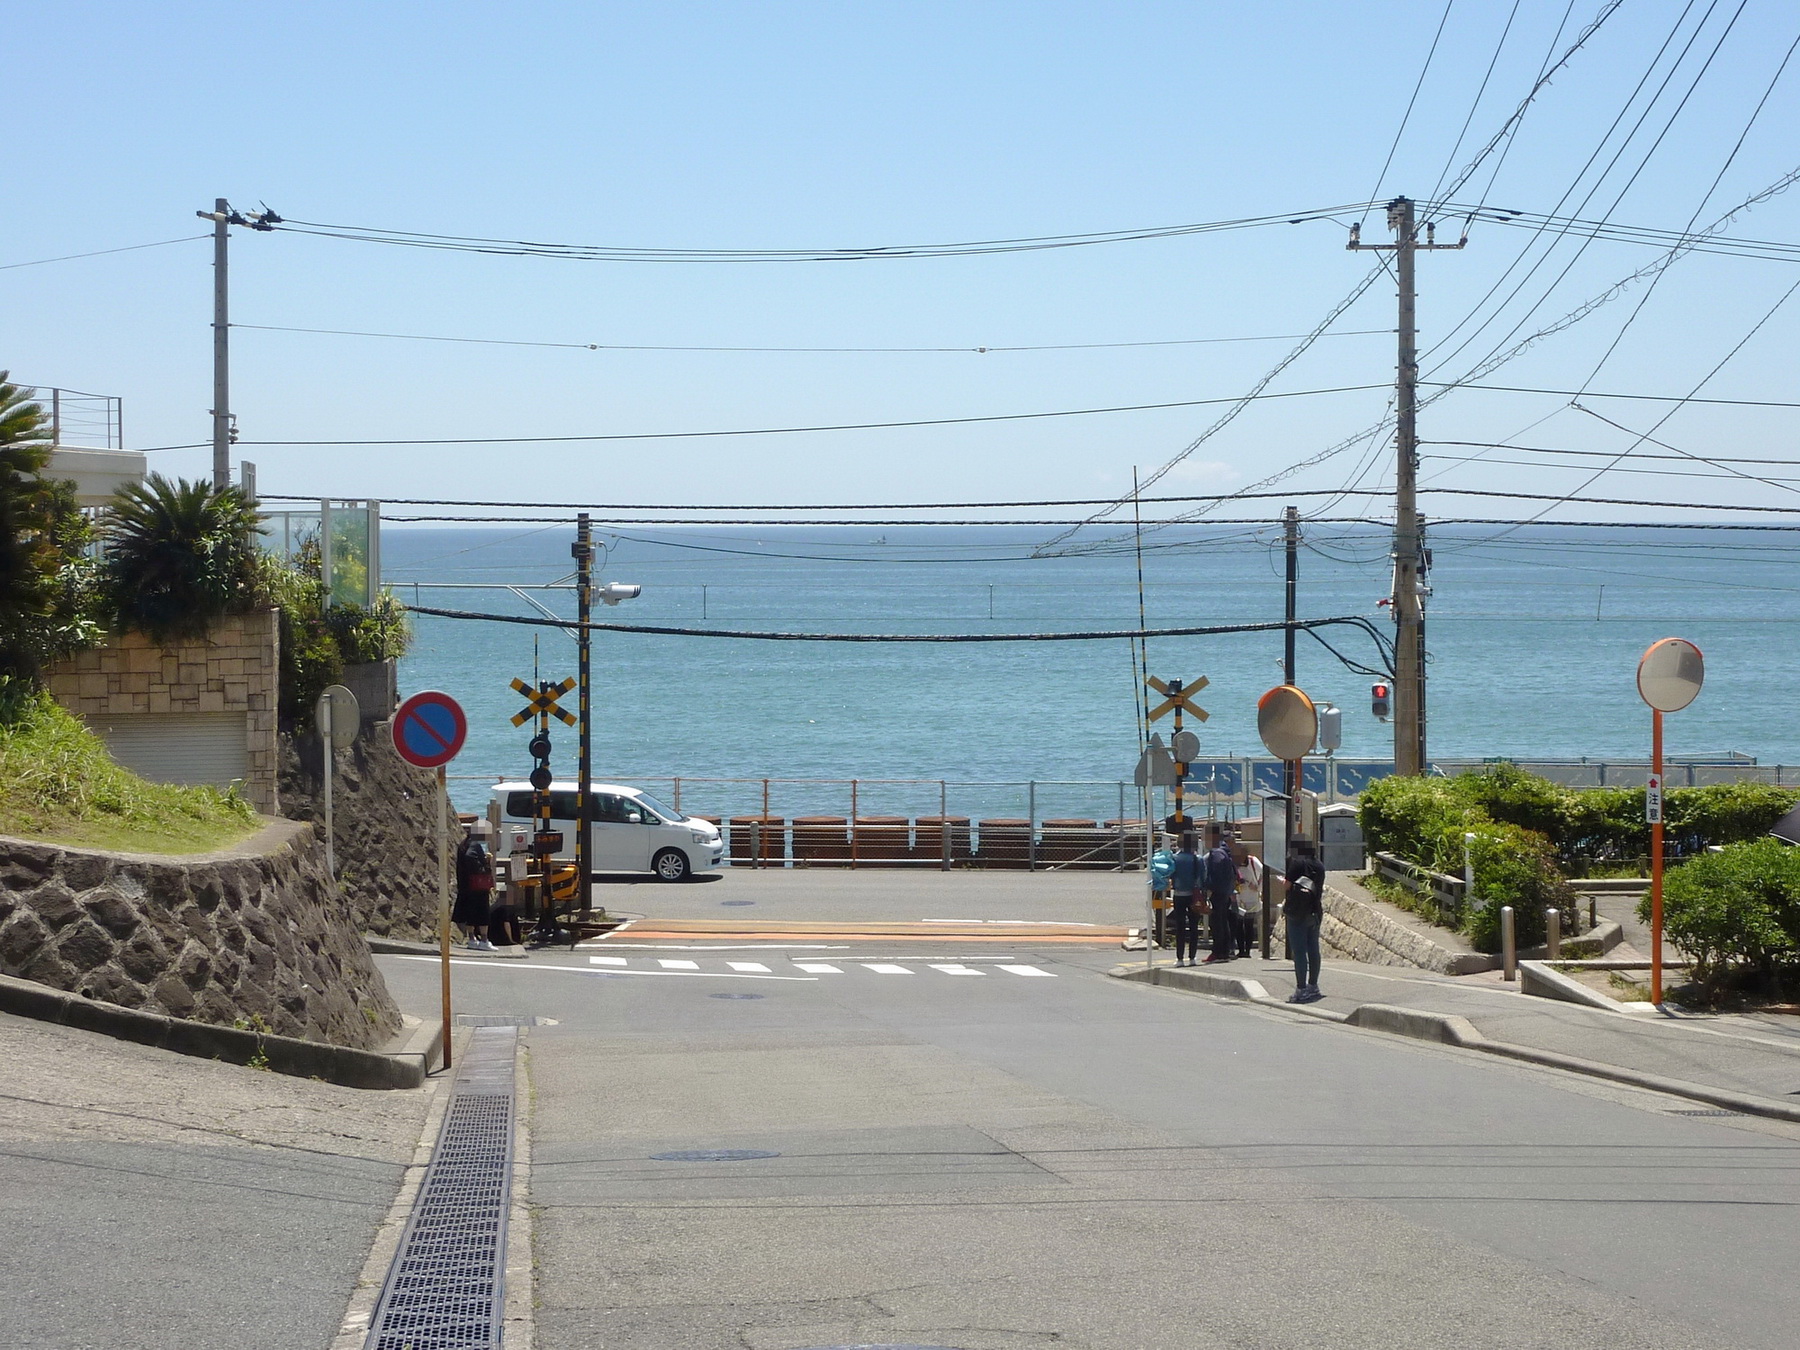 《男兒當入樽》漫畫曾在神奈川縣江之島附近取景，每年均引來大量大陸遊客朝聖。（維基百科圖片）